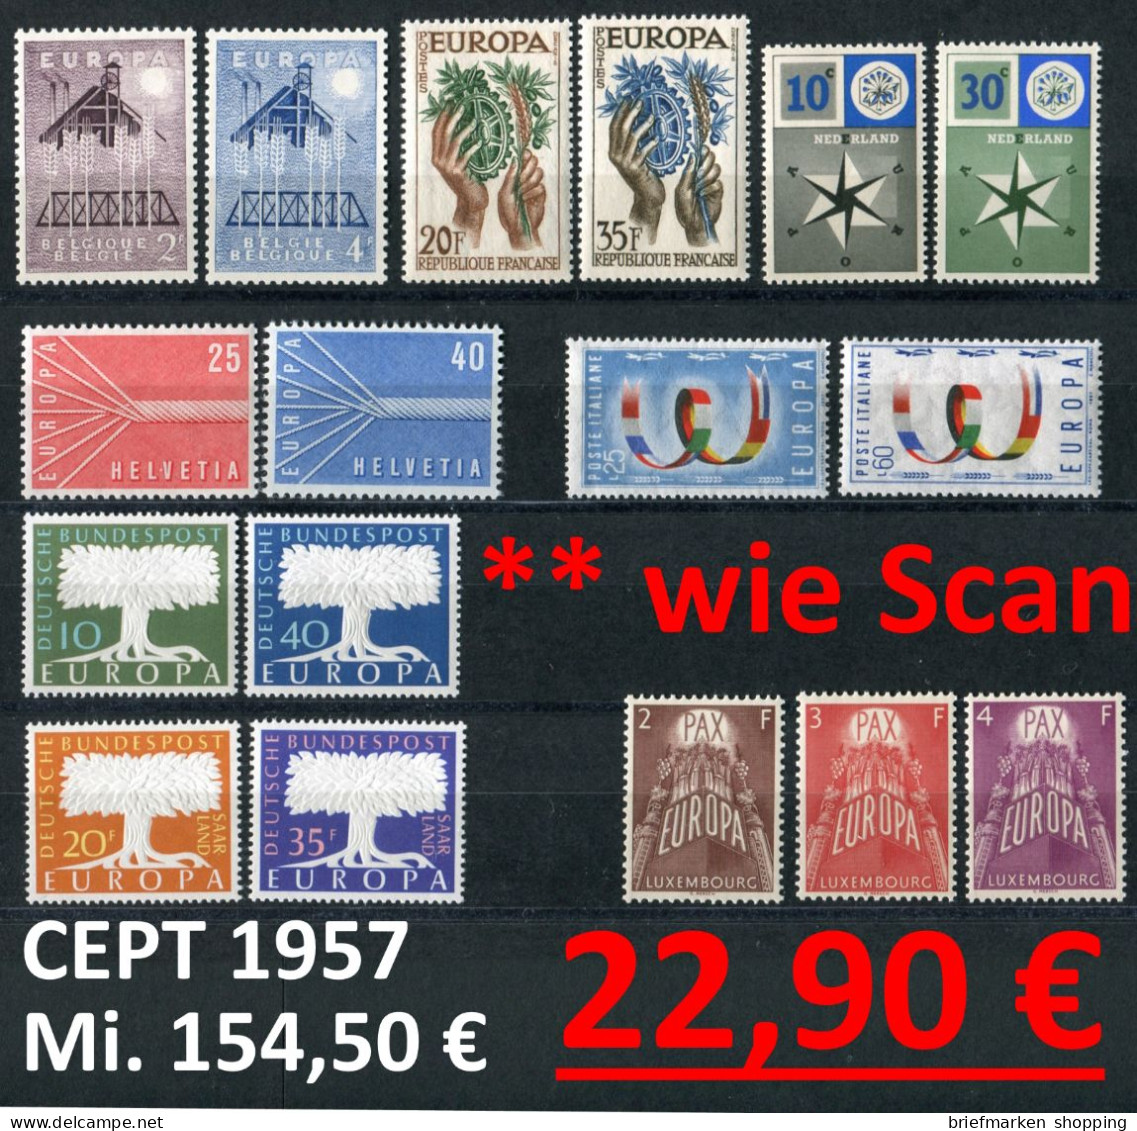 CEPT 1957 -  8 Länder - Michel  Gem./as Per SCAB - ** Mnh Neuf Postfris - CEPT - EUROPA - Michel 154,50 € - 1957